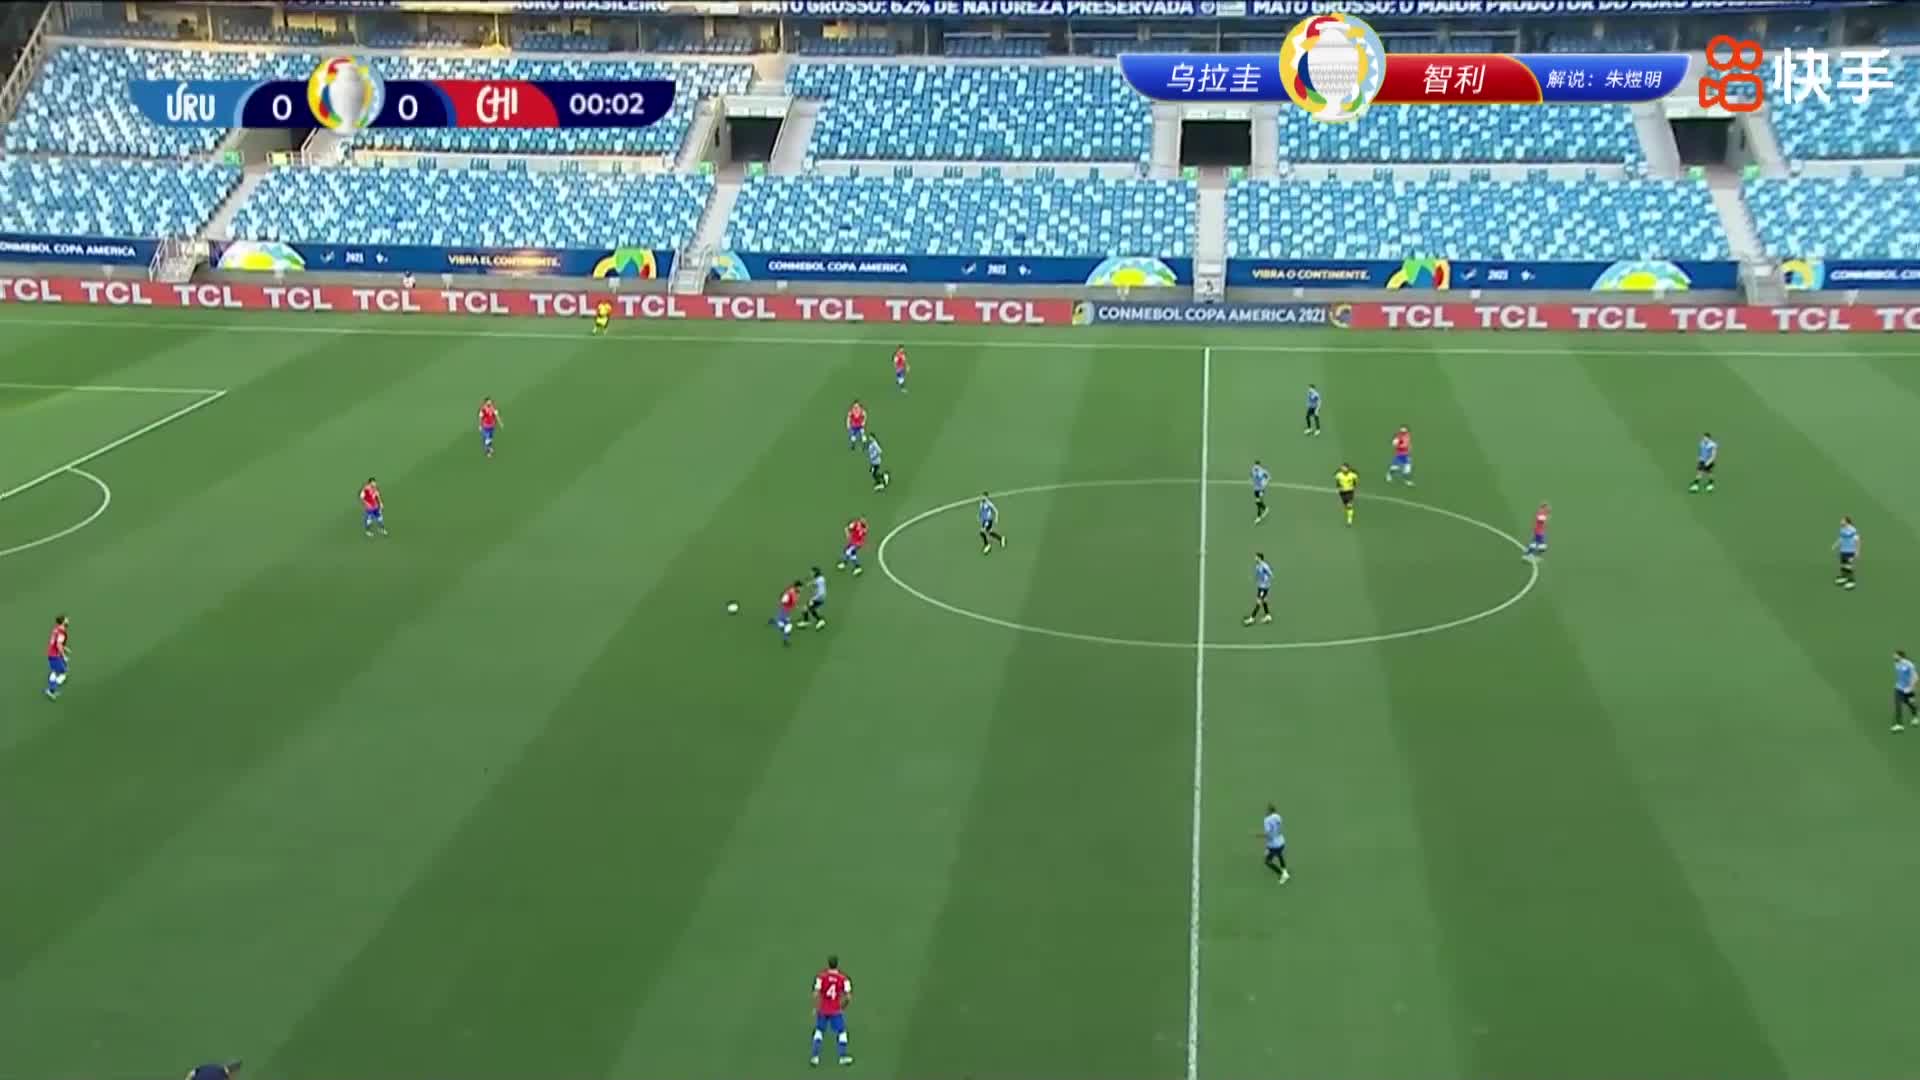 【集锦】美洲杯-巴尔韦德染黄苏亚雷斯垫射破门 乌拉圭1-1智利